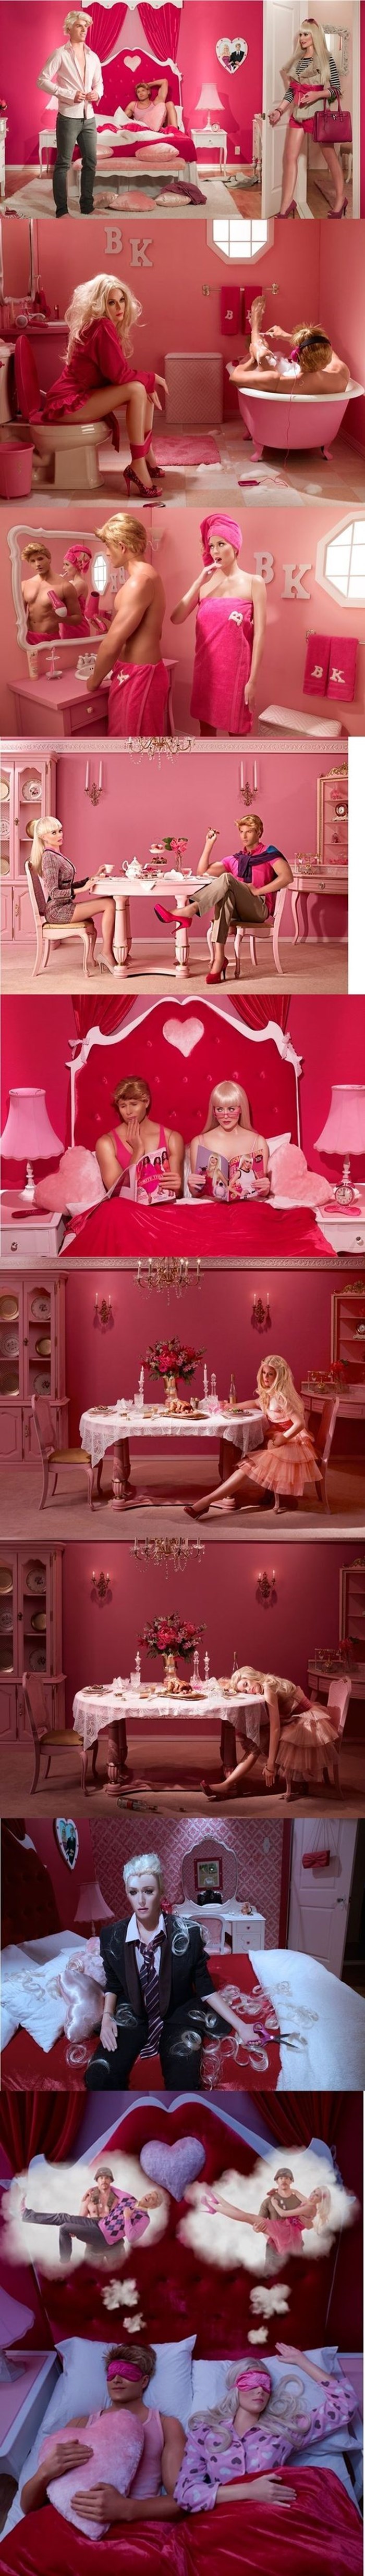 Ovakve bi se stvari događale kada bi Barbie i Ken bili stvarne osobe